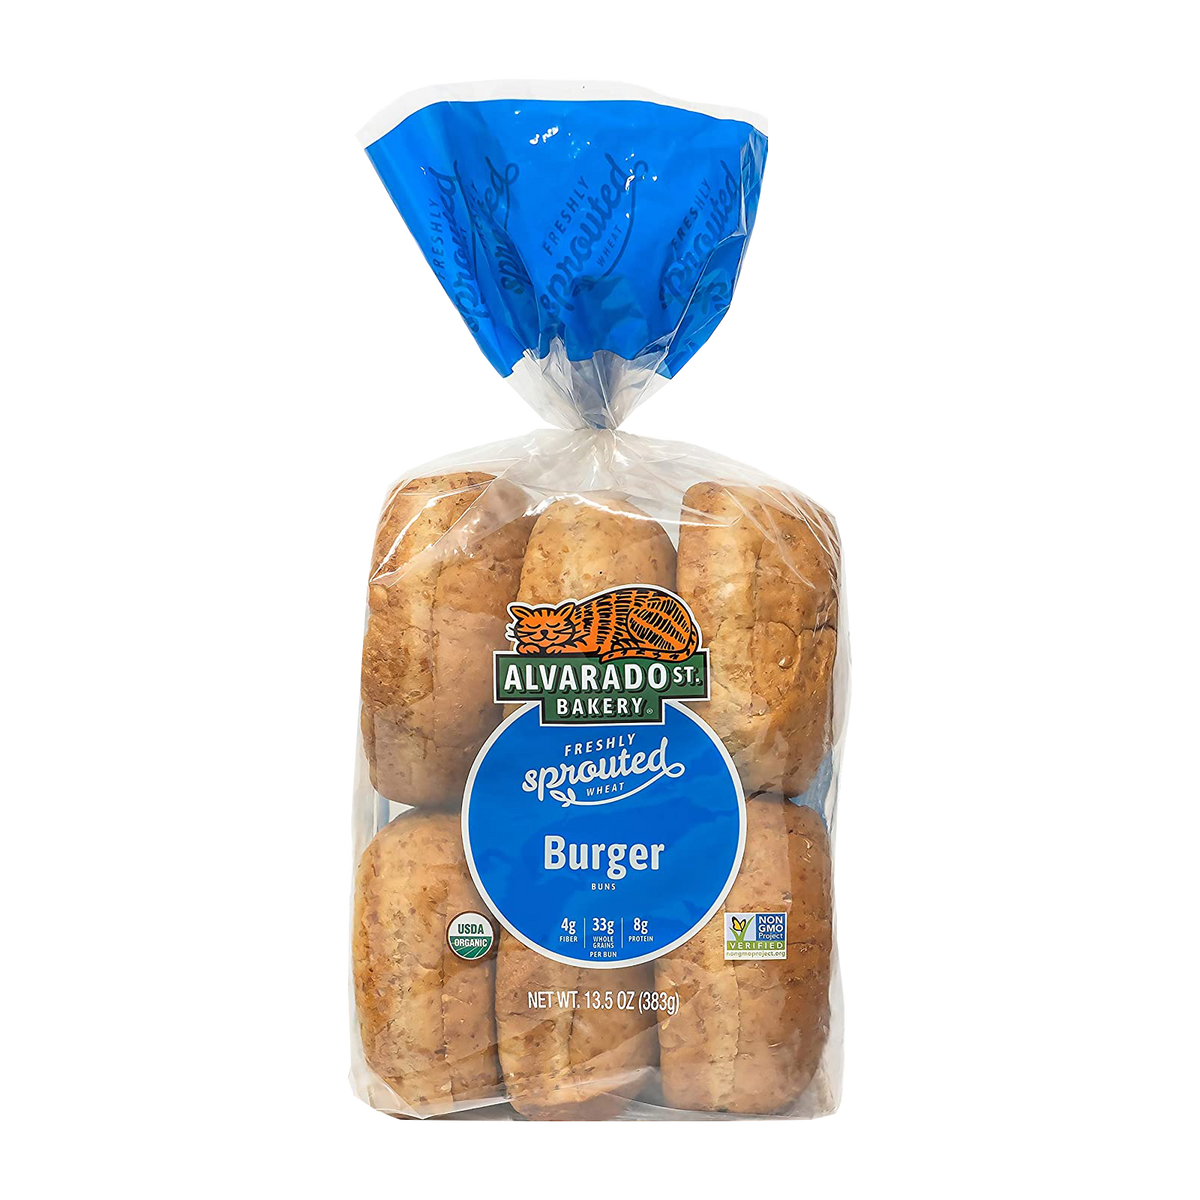 有機 JAS オーガニック 発芽小麦 スプラウト バーガー バンズ パン 乳製品不使用 (6個) ホライズンファームズ